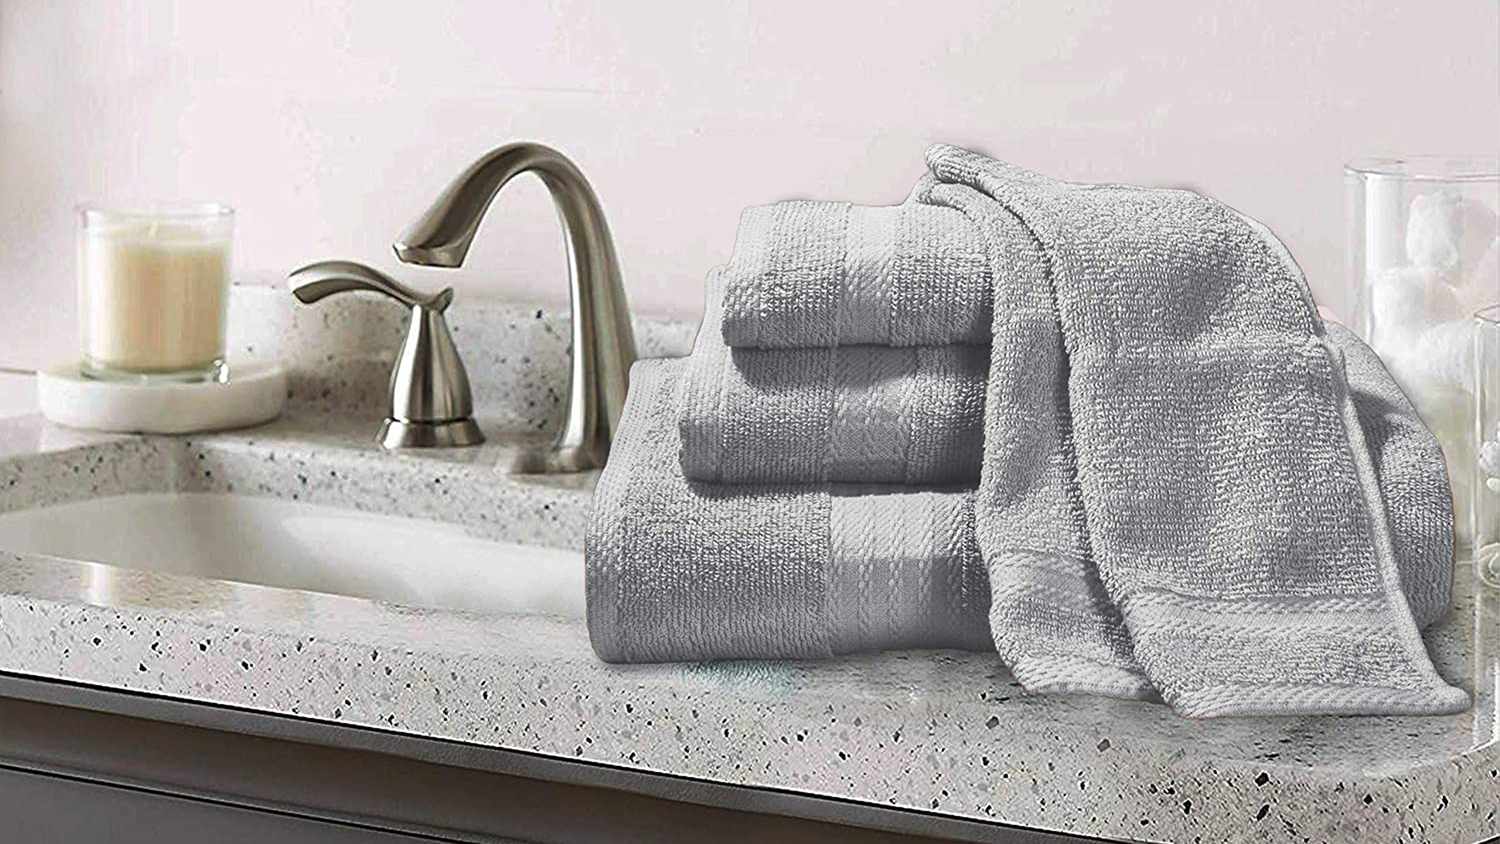 4 Bath Towels 100% Pure Cotton Glamburg Premium Cotton 4 Pack Bath Towel Set 